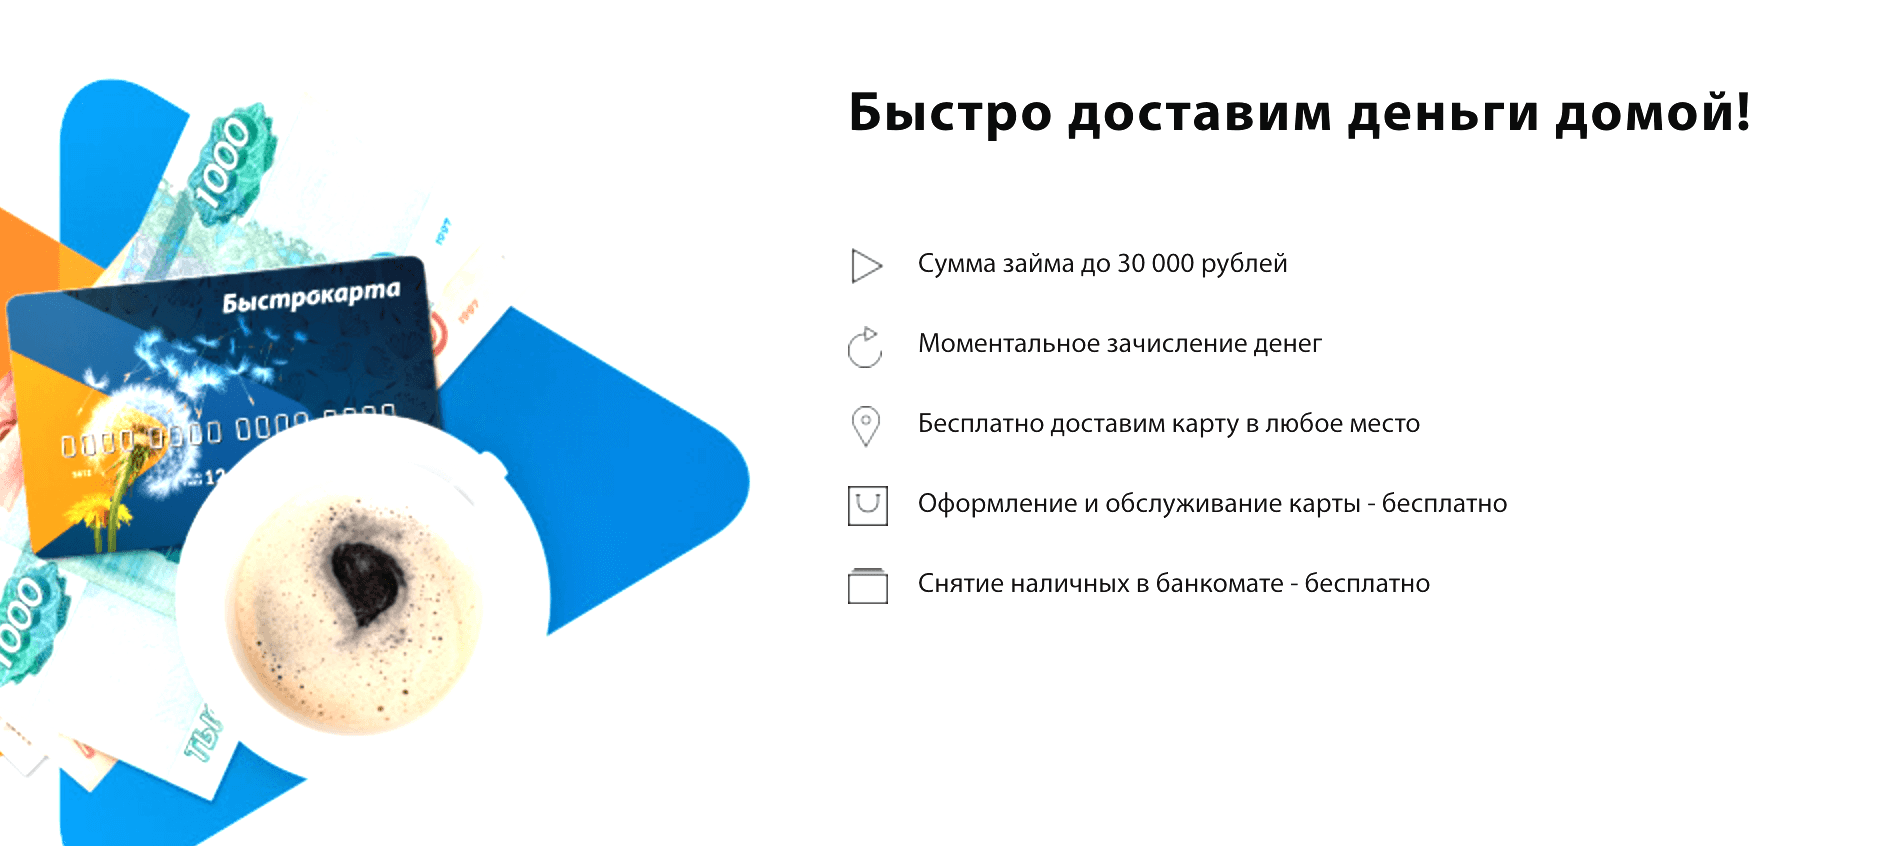 Плюс банк москва официальный сайт заявление на отсрочку кредита